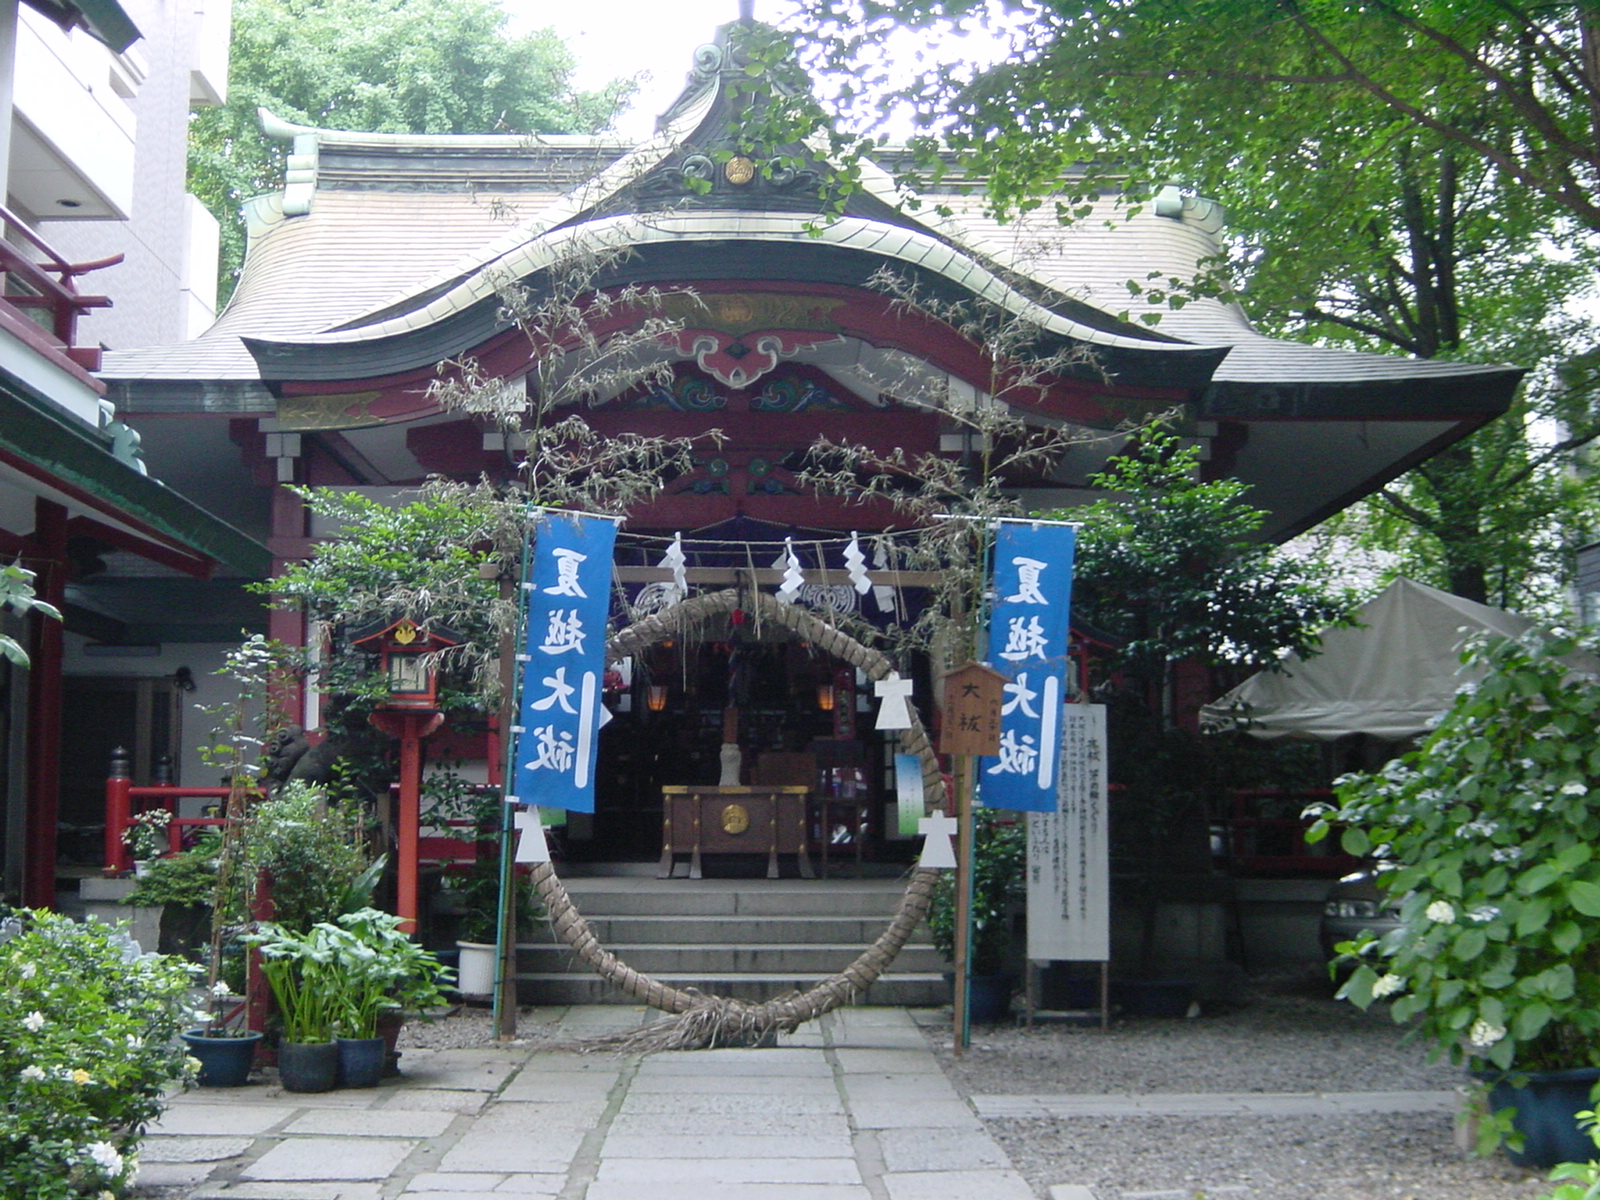  三崎稲荷神社 